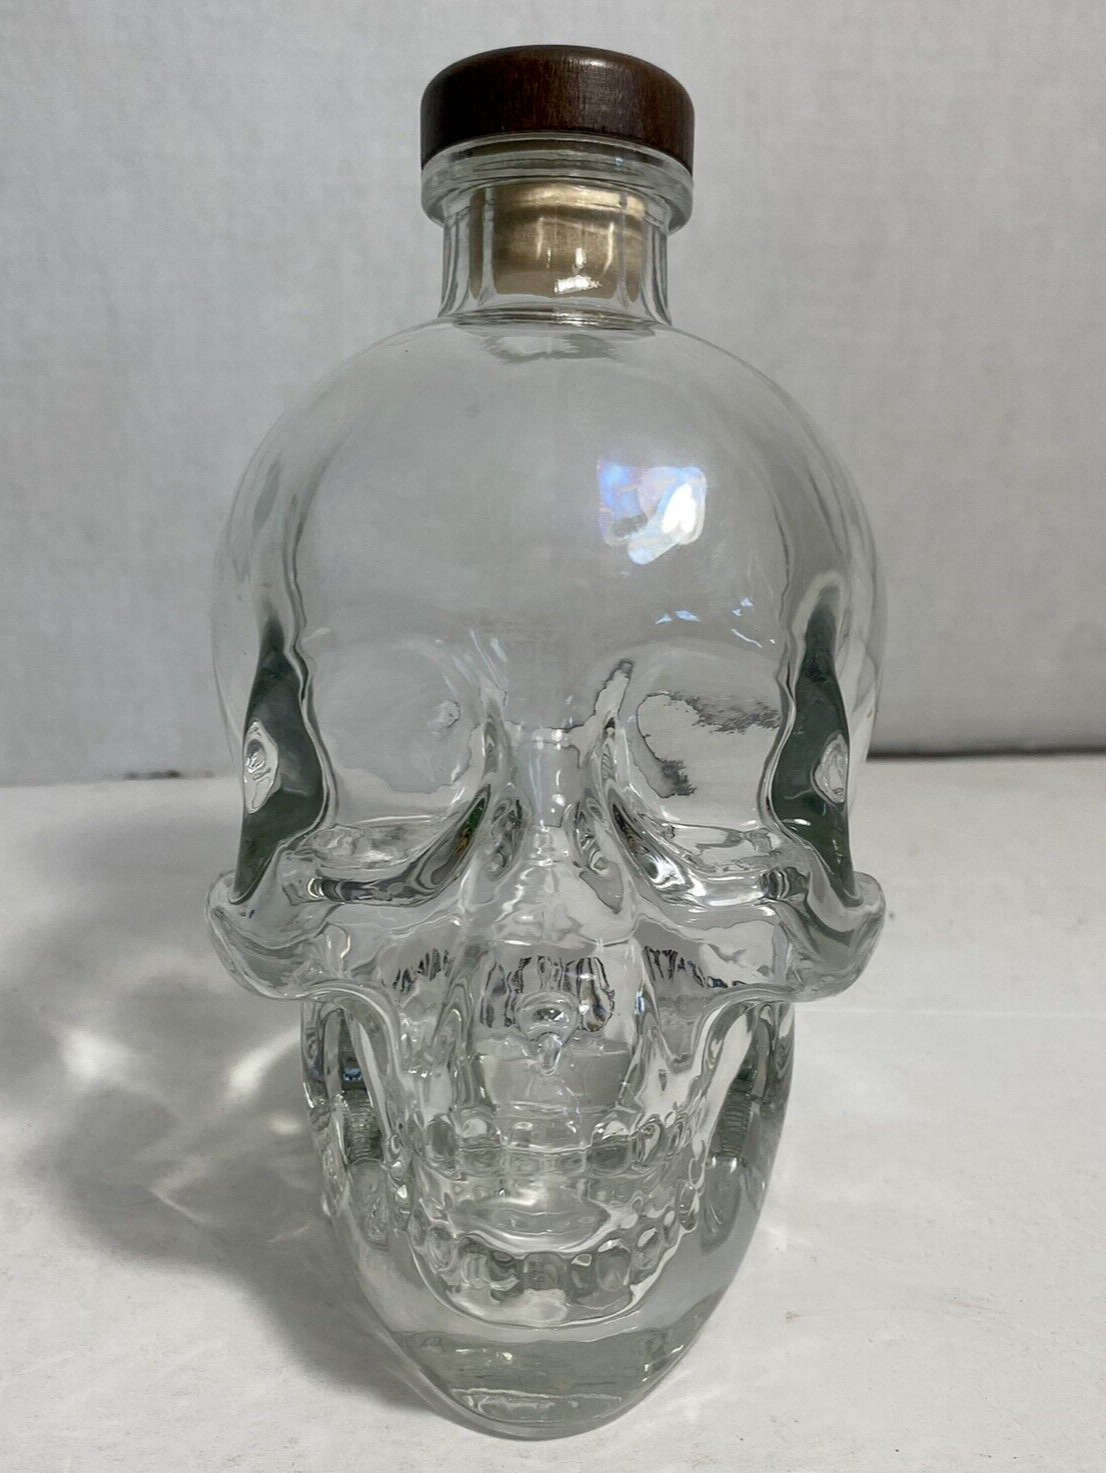 Crystal Head Vodka Skull Bottle (Empty) 750 ml w/Original Stopper By Dan Akroyd